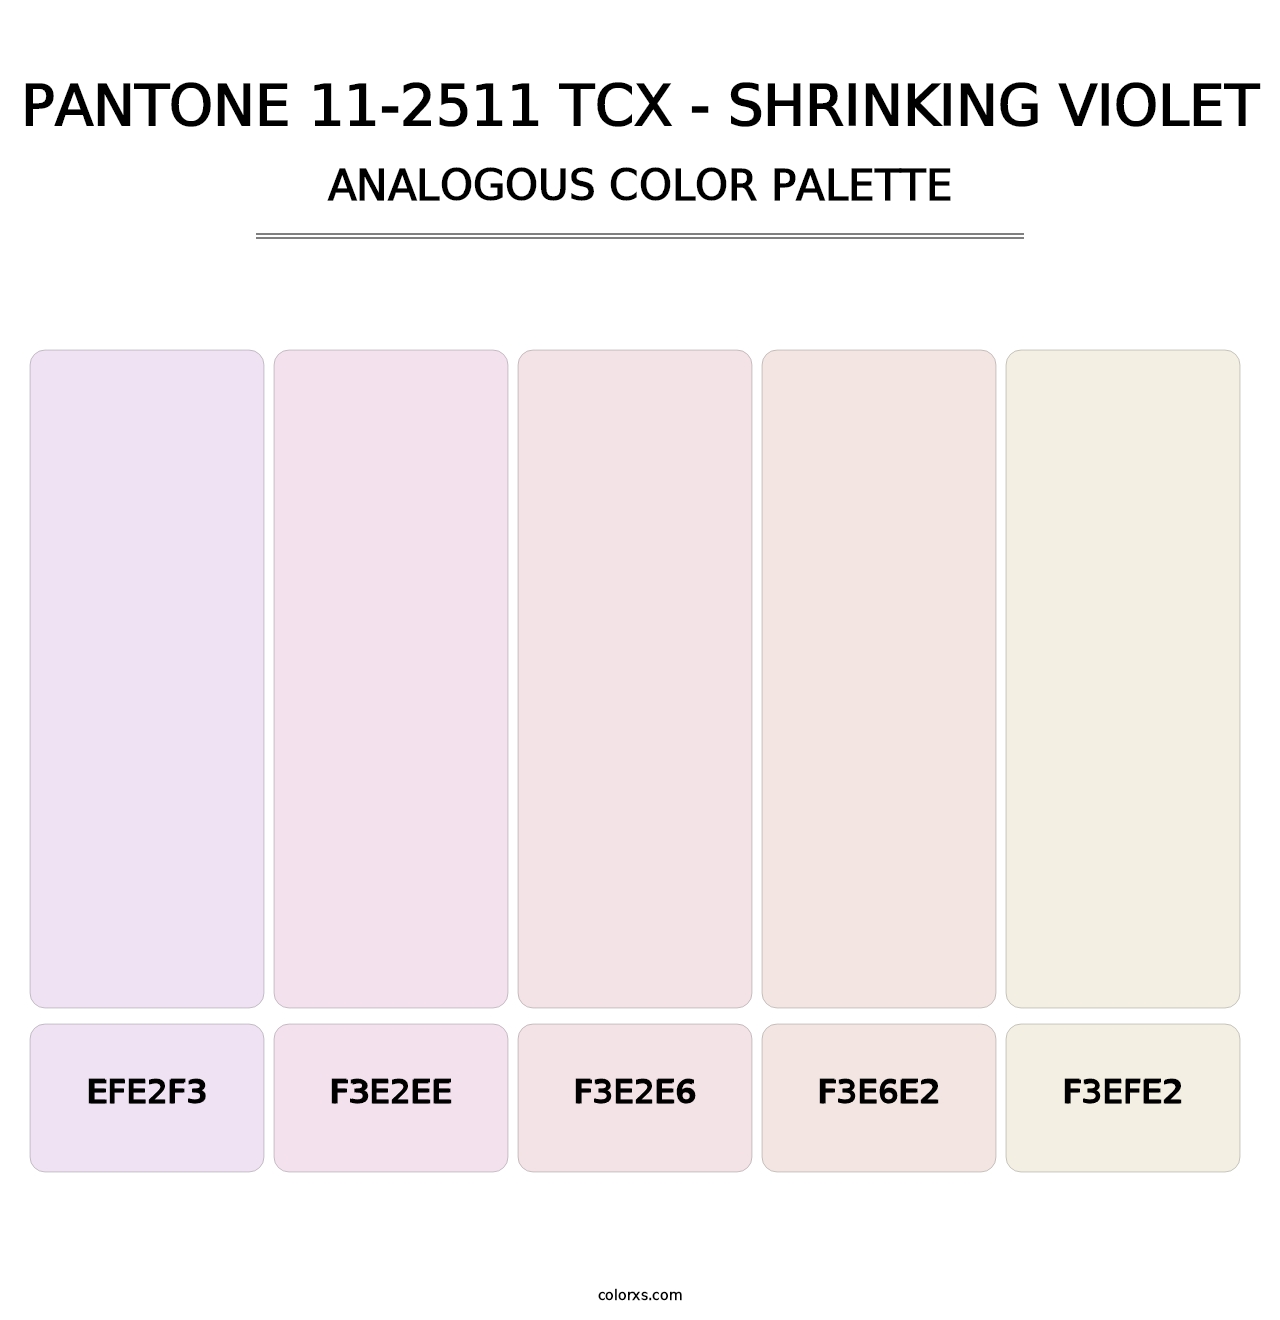 PANTONE 11-2511 TCX - Shrinking Violet - Analogous Color Palette